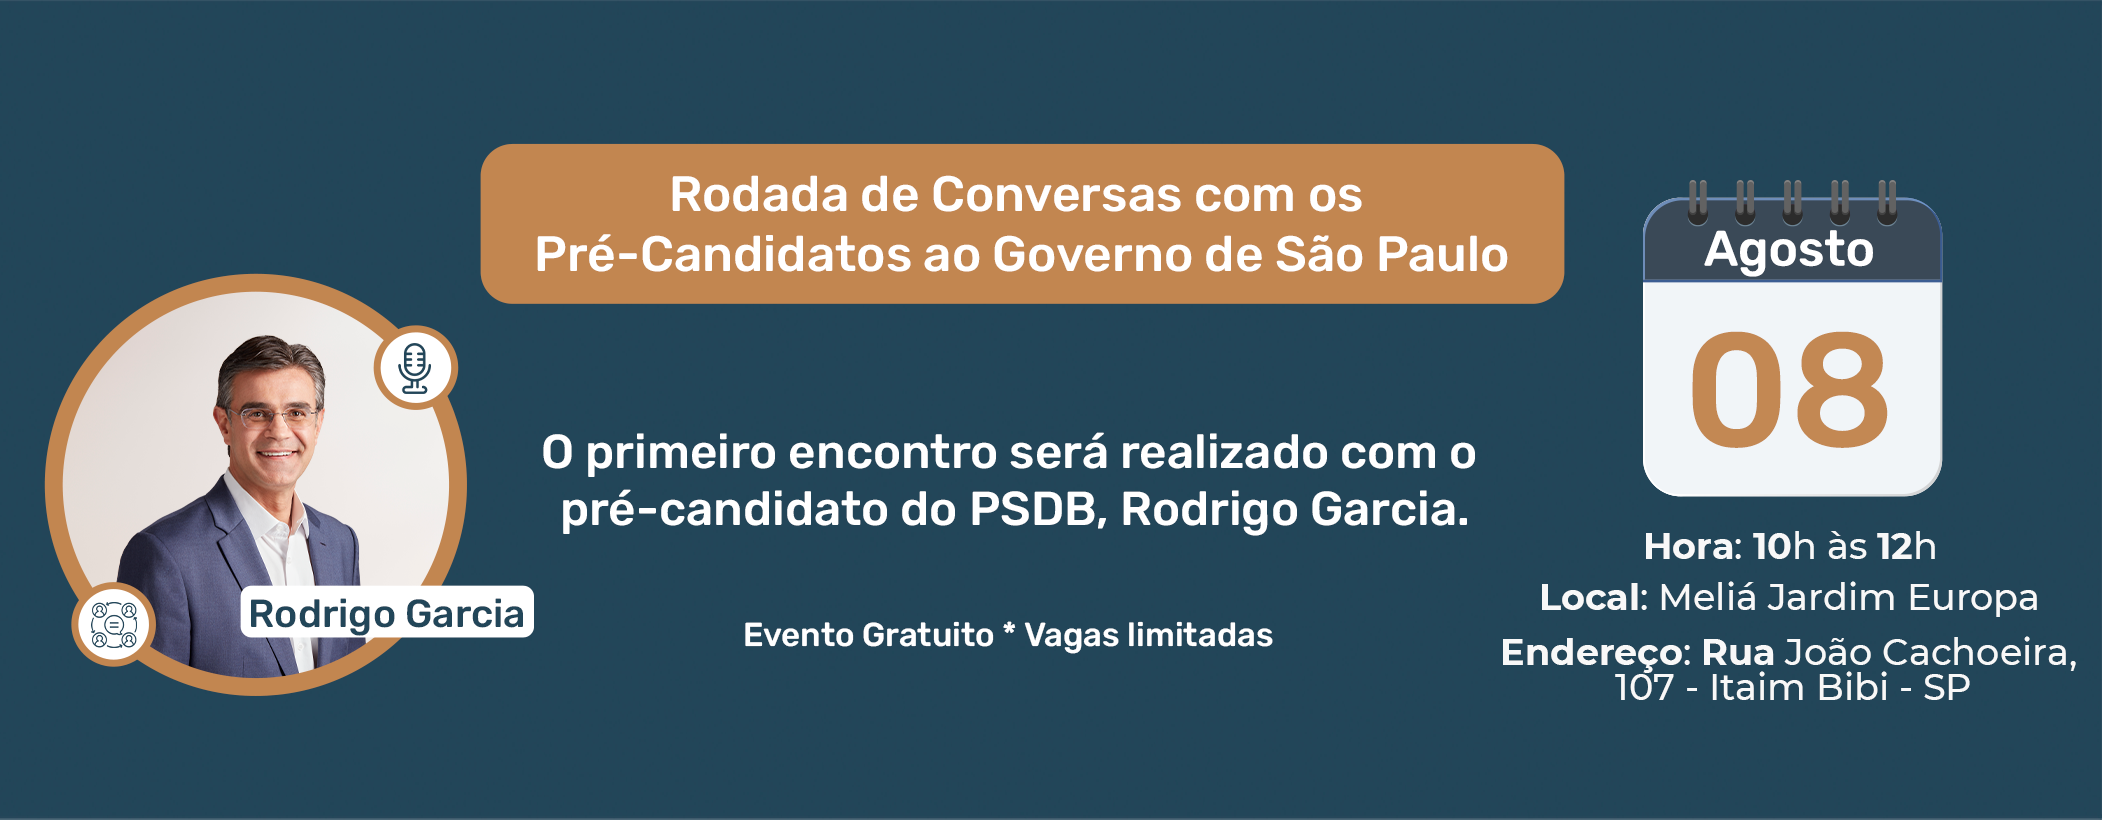 Rodada de Conversars com os Pré-Candidatos ao Governo de São Paulo - Rodrigo Garcia